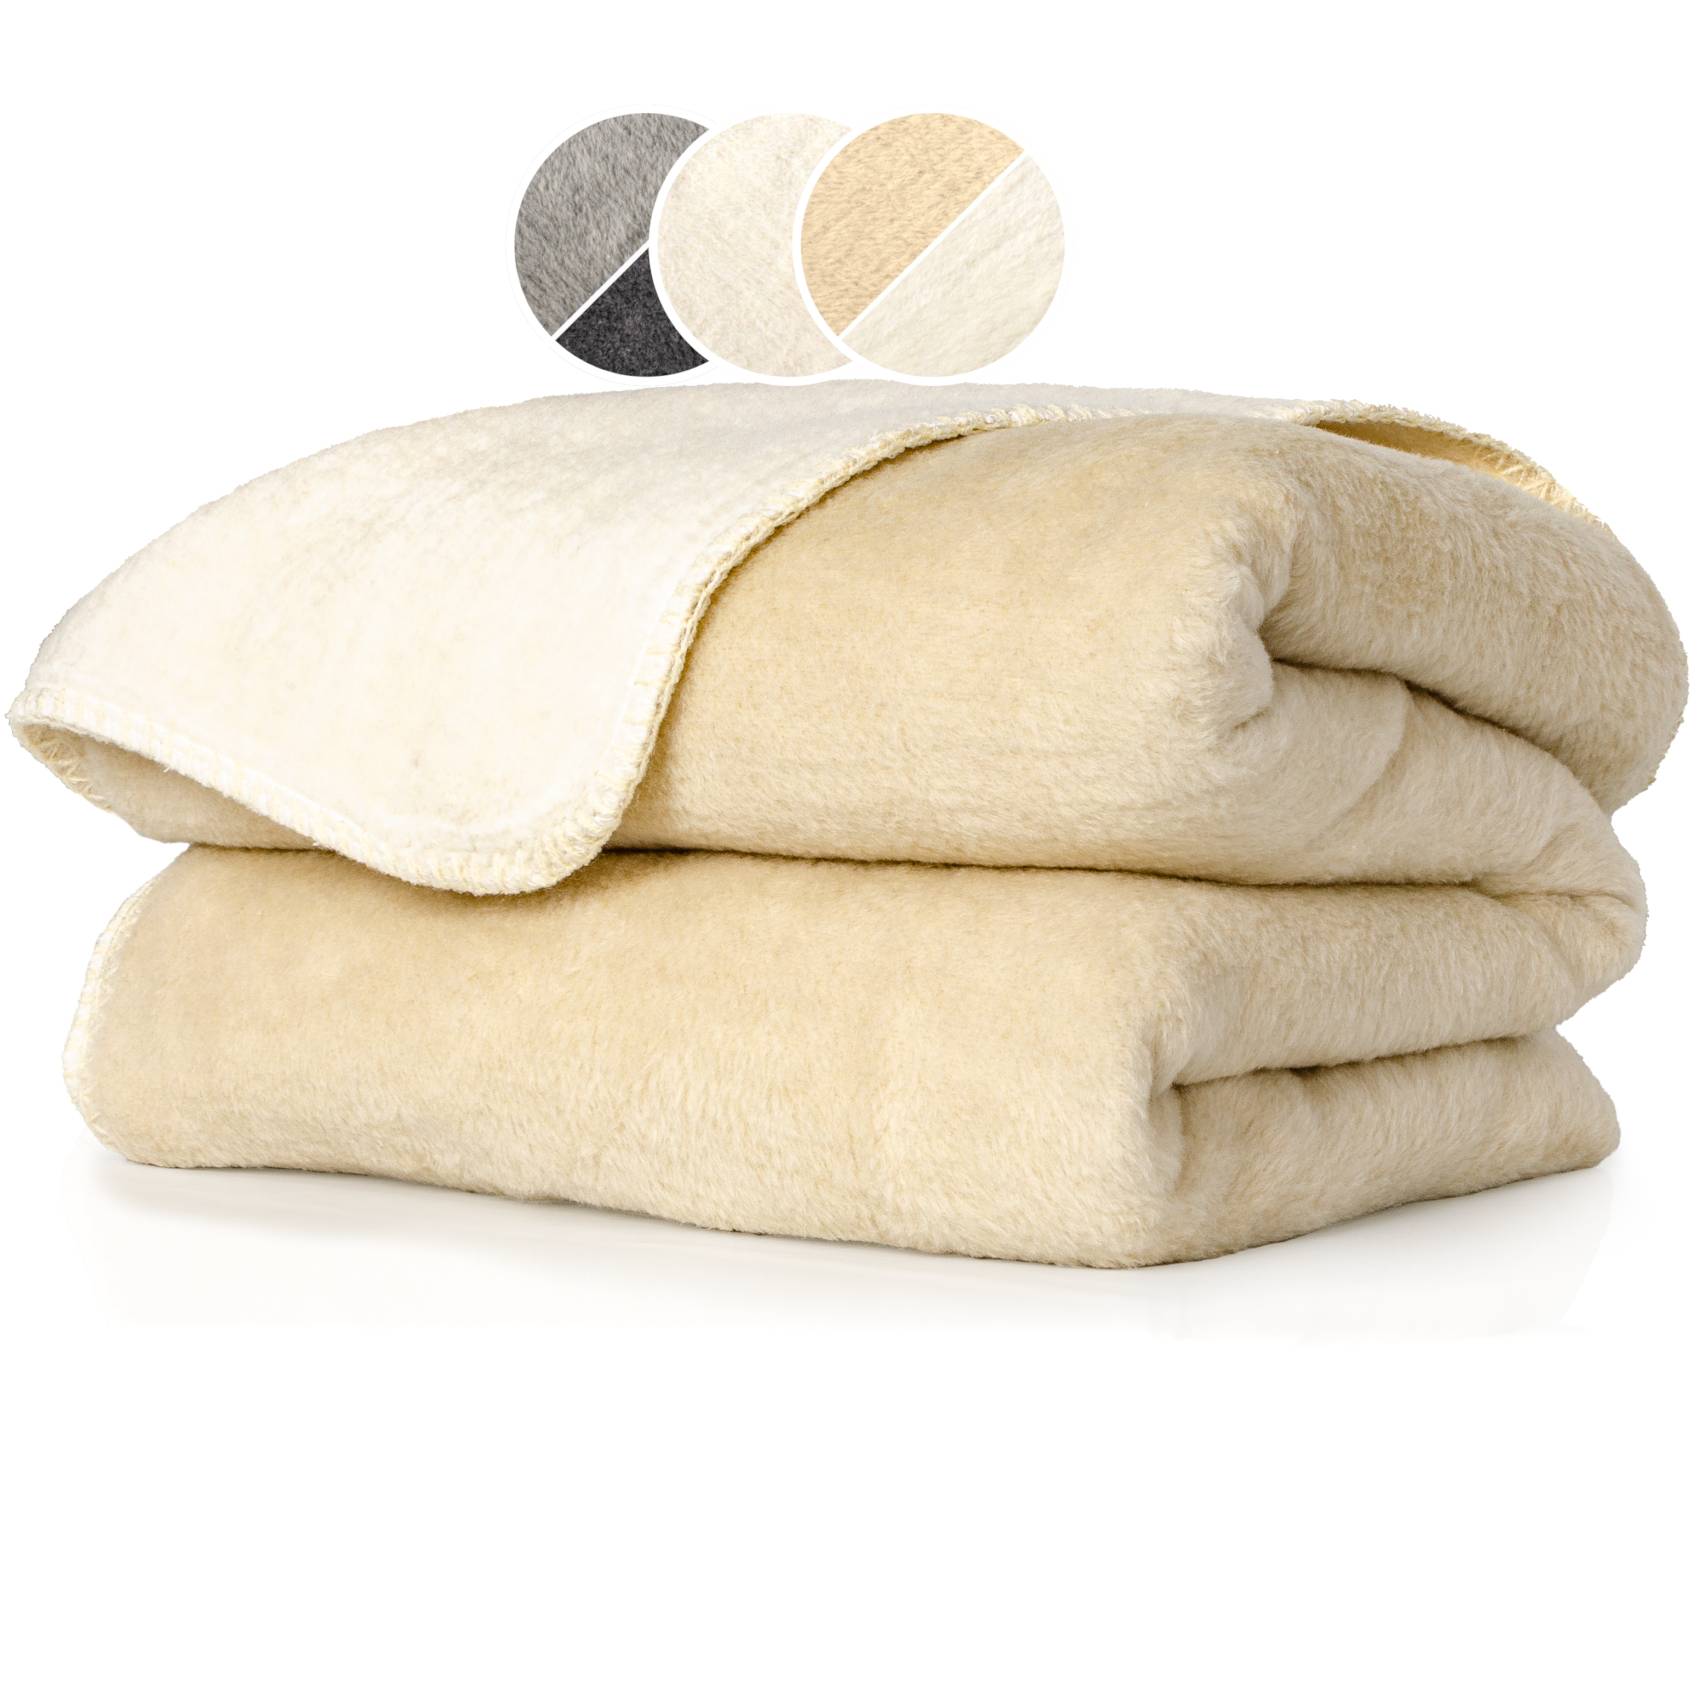 Kuscheldecke Tagesdecke Baumwolle Dralon Decke Wohndecke vieles Uni Wachstuchtischdecken mehr Premium - 